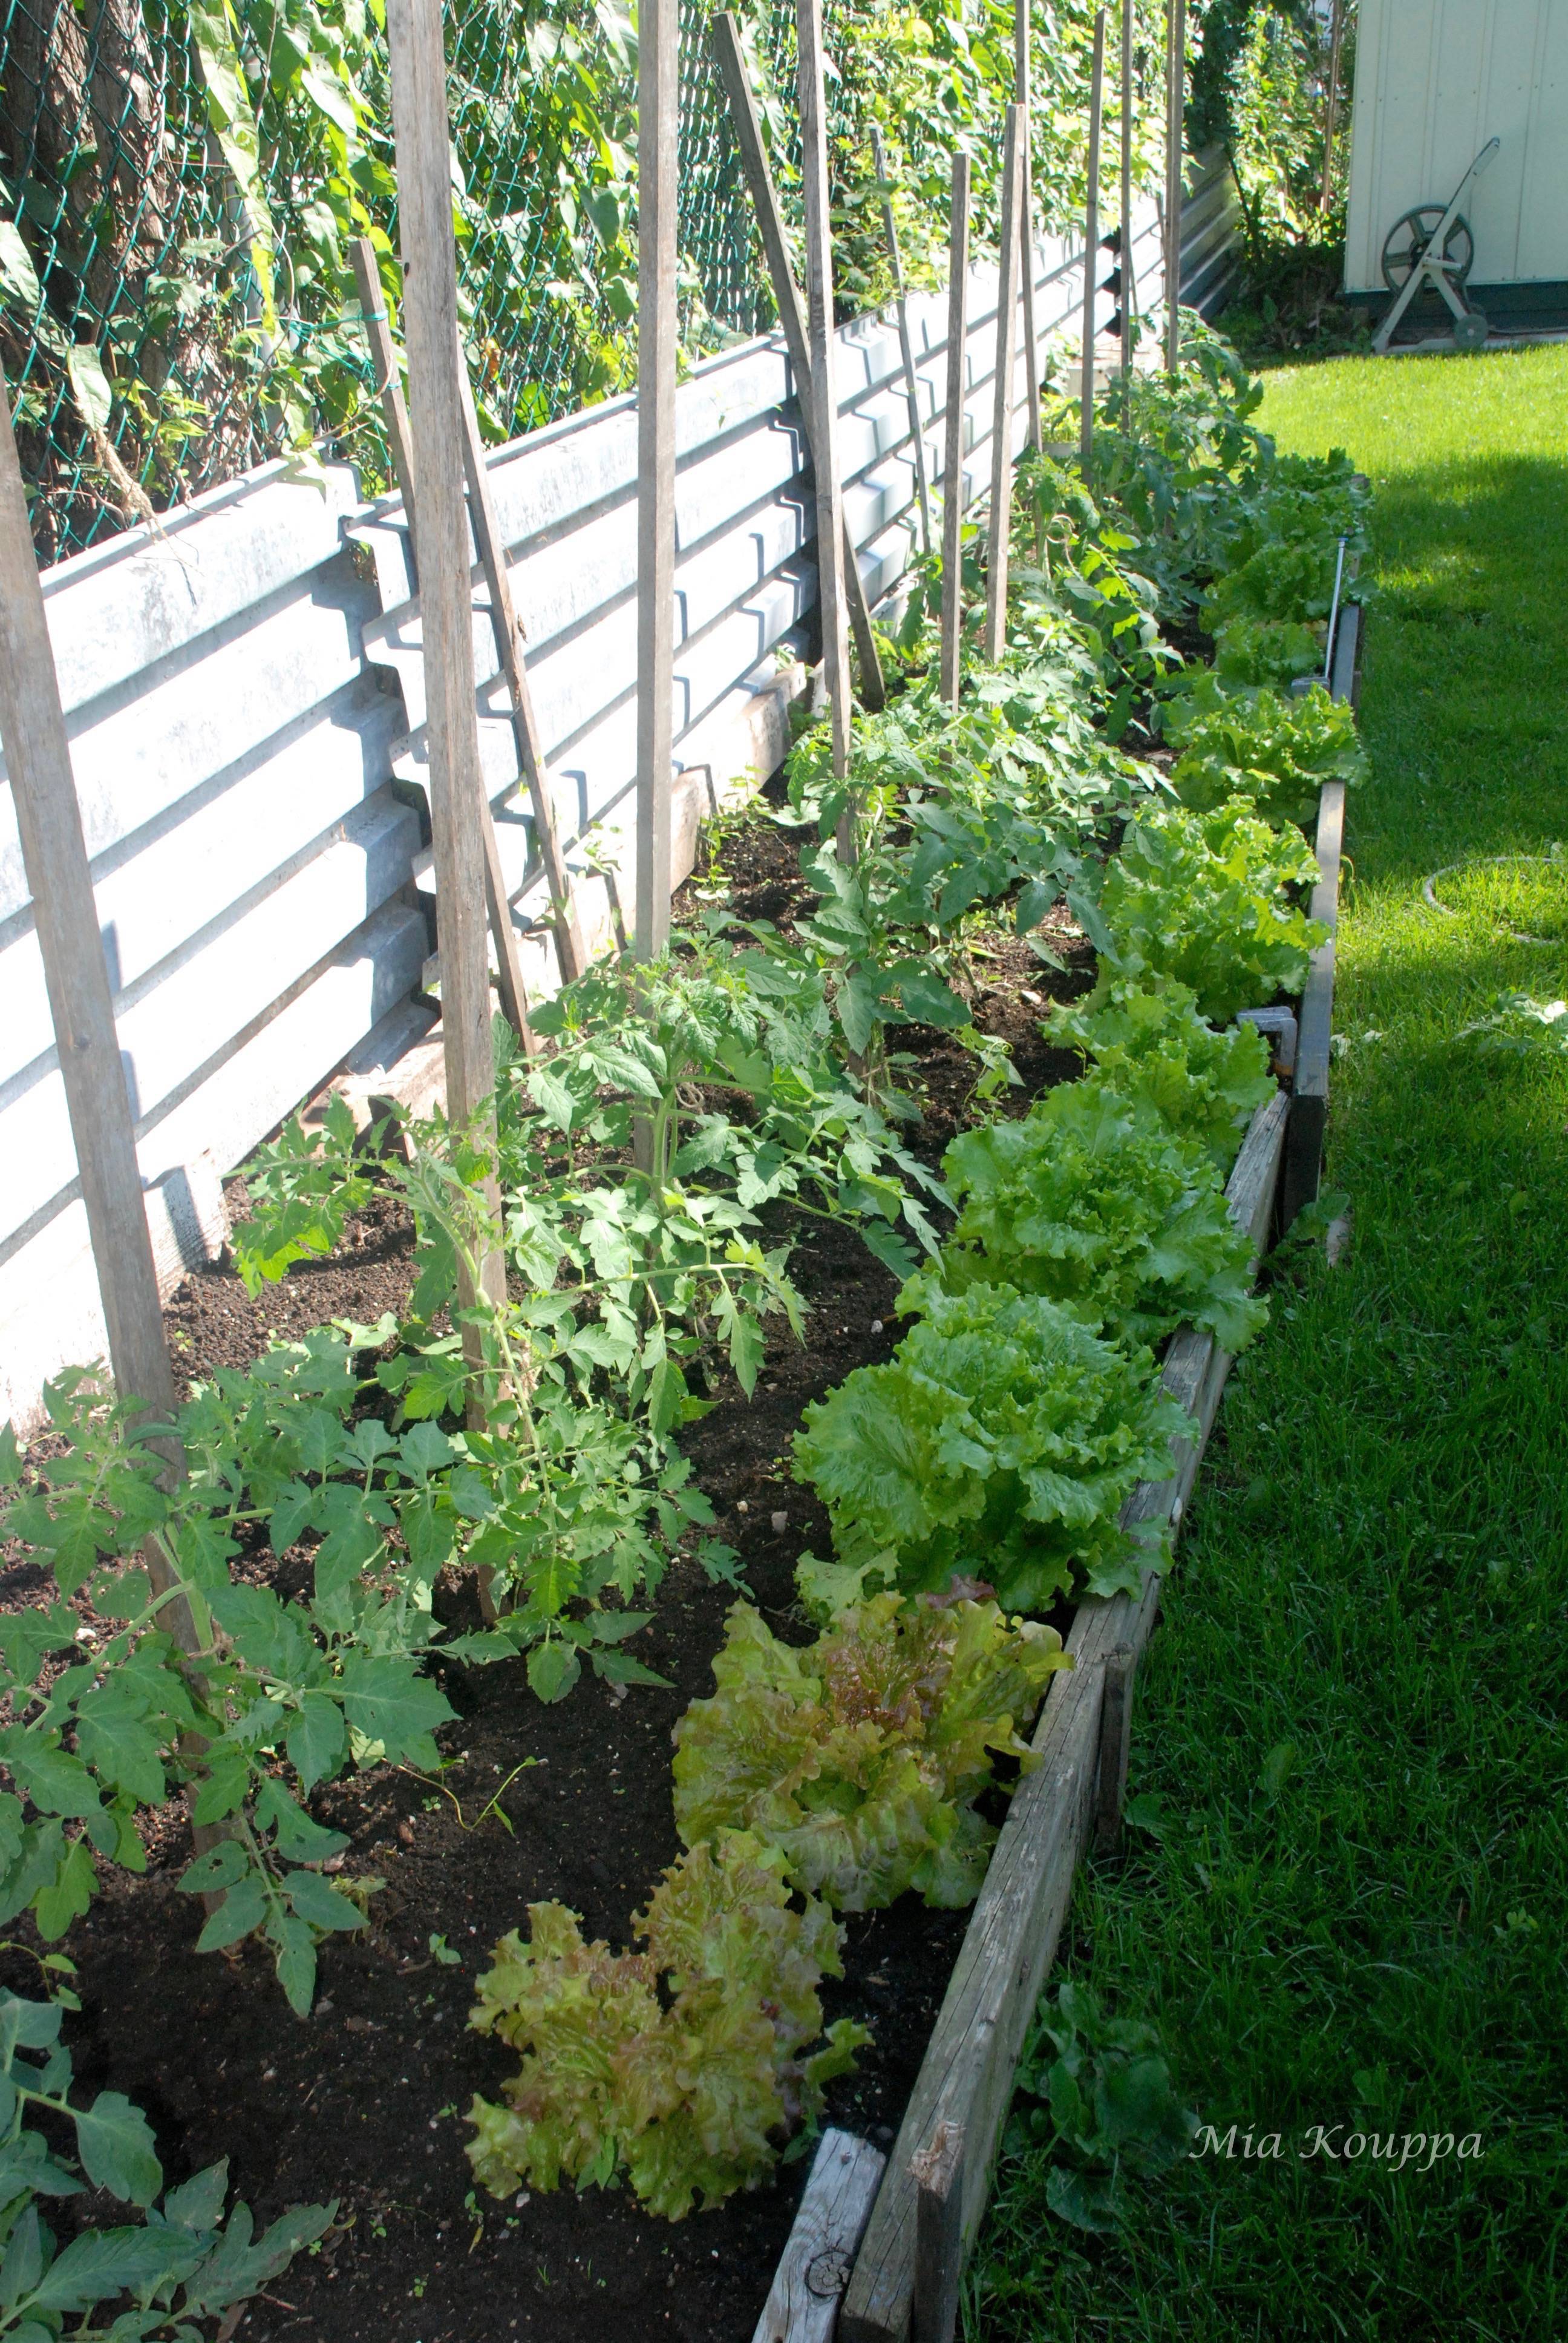 Fresh garden lettuce